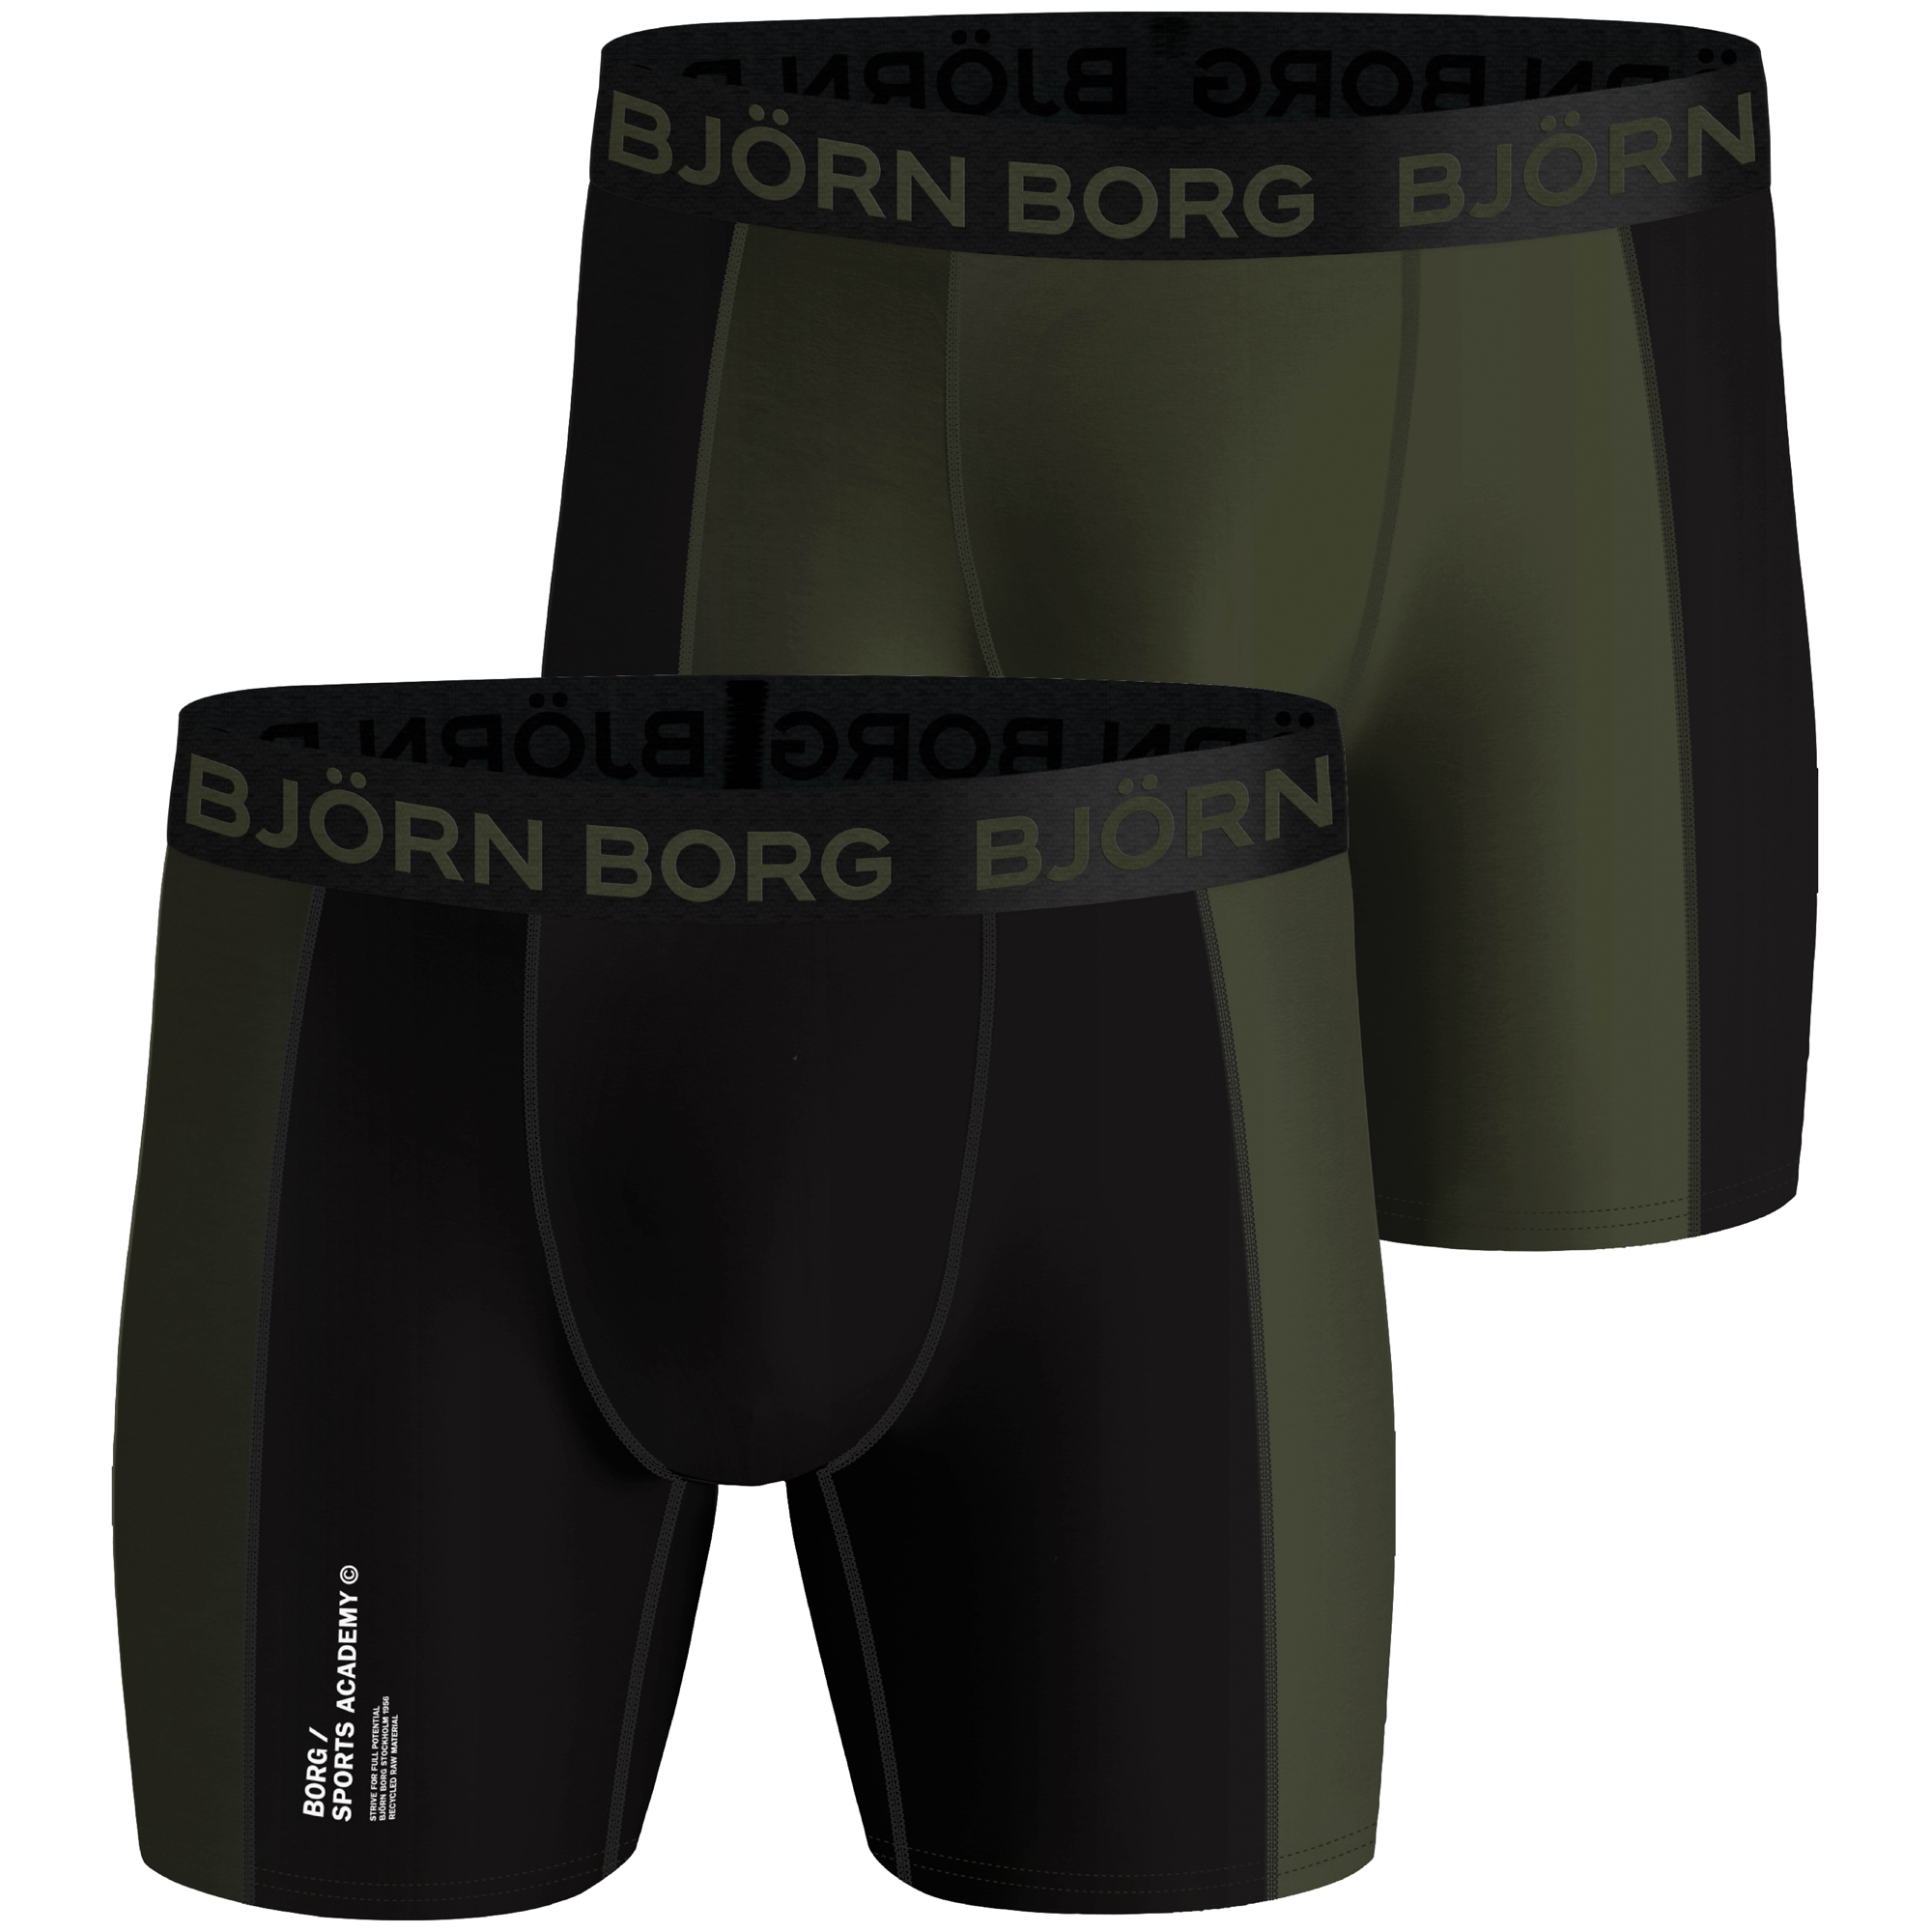 Boxers Björn Borg Sport Homme (lot de 2)